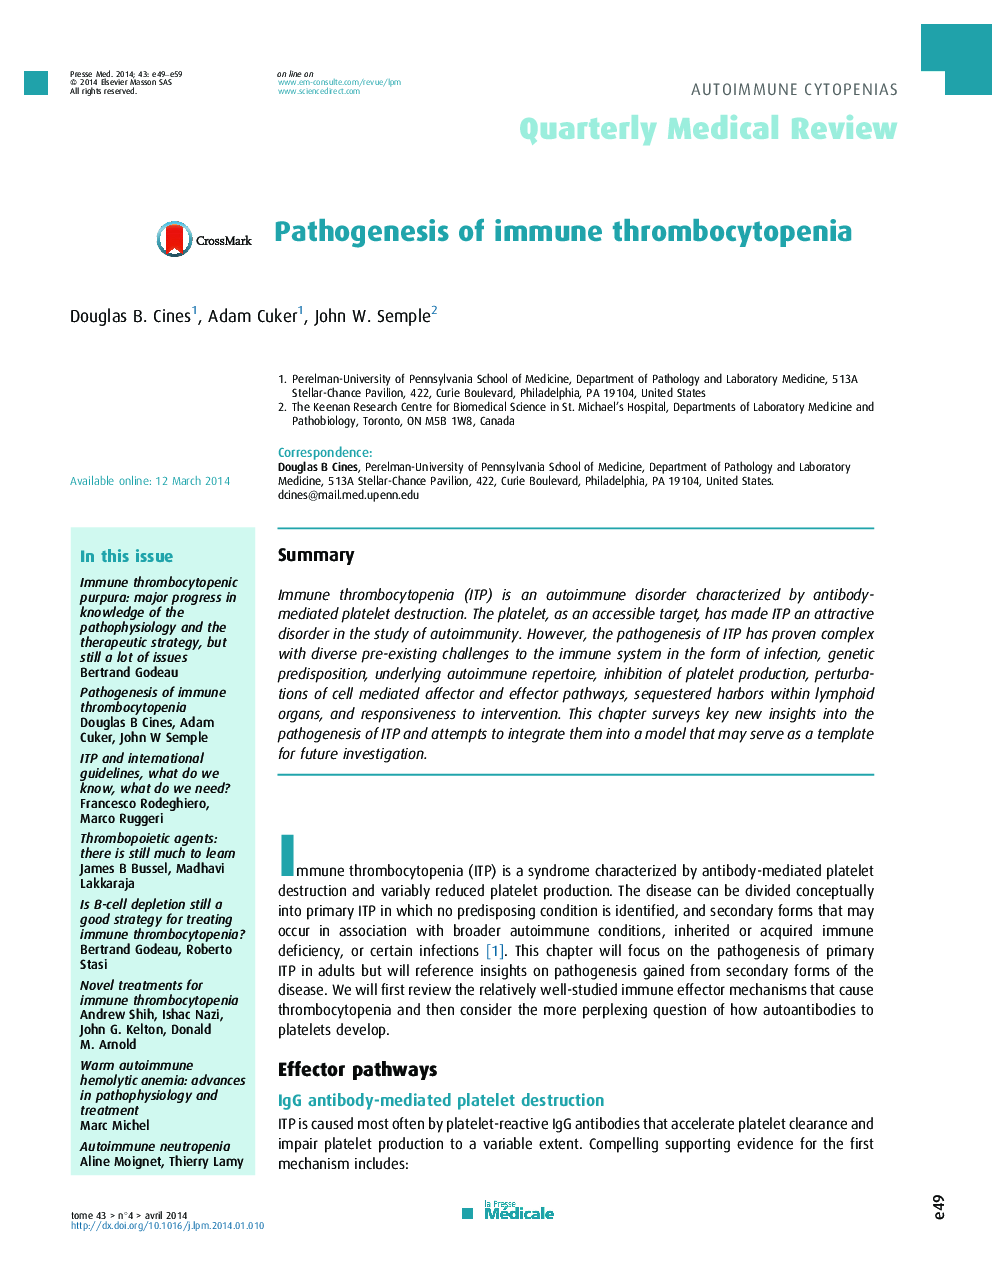 پاتوژنز ترومبوسیتوپنی ایمنی 